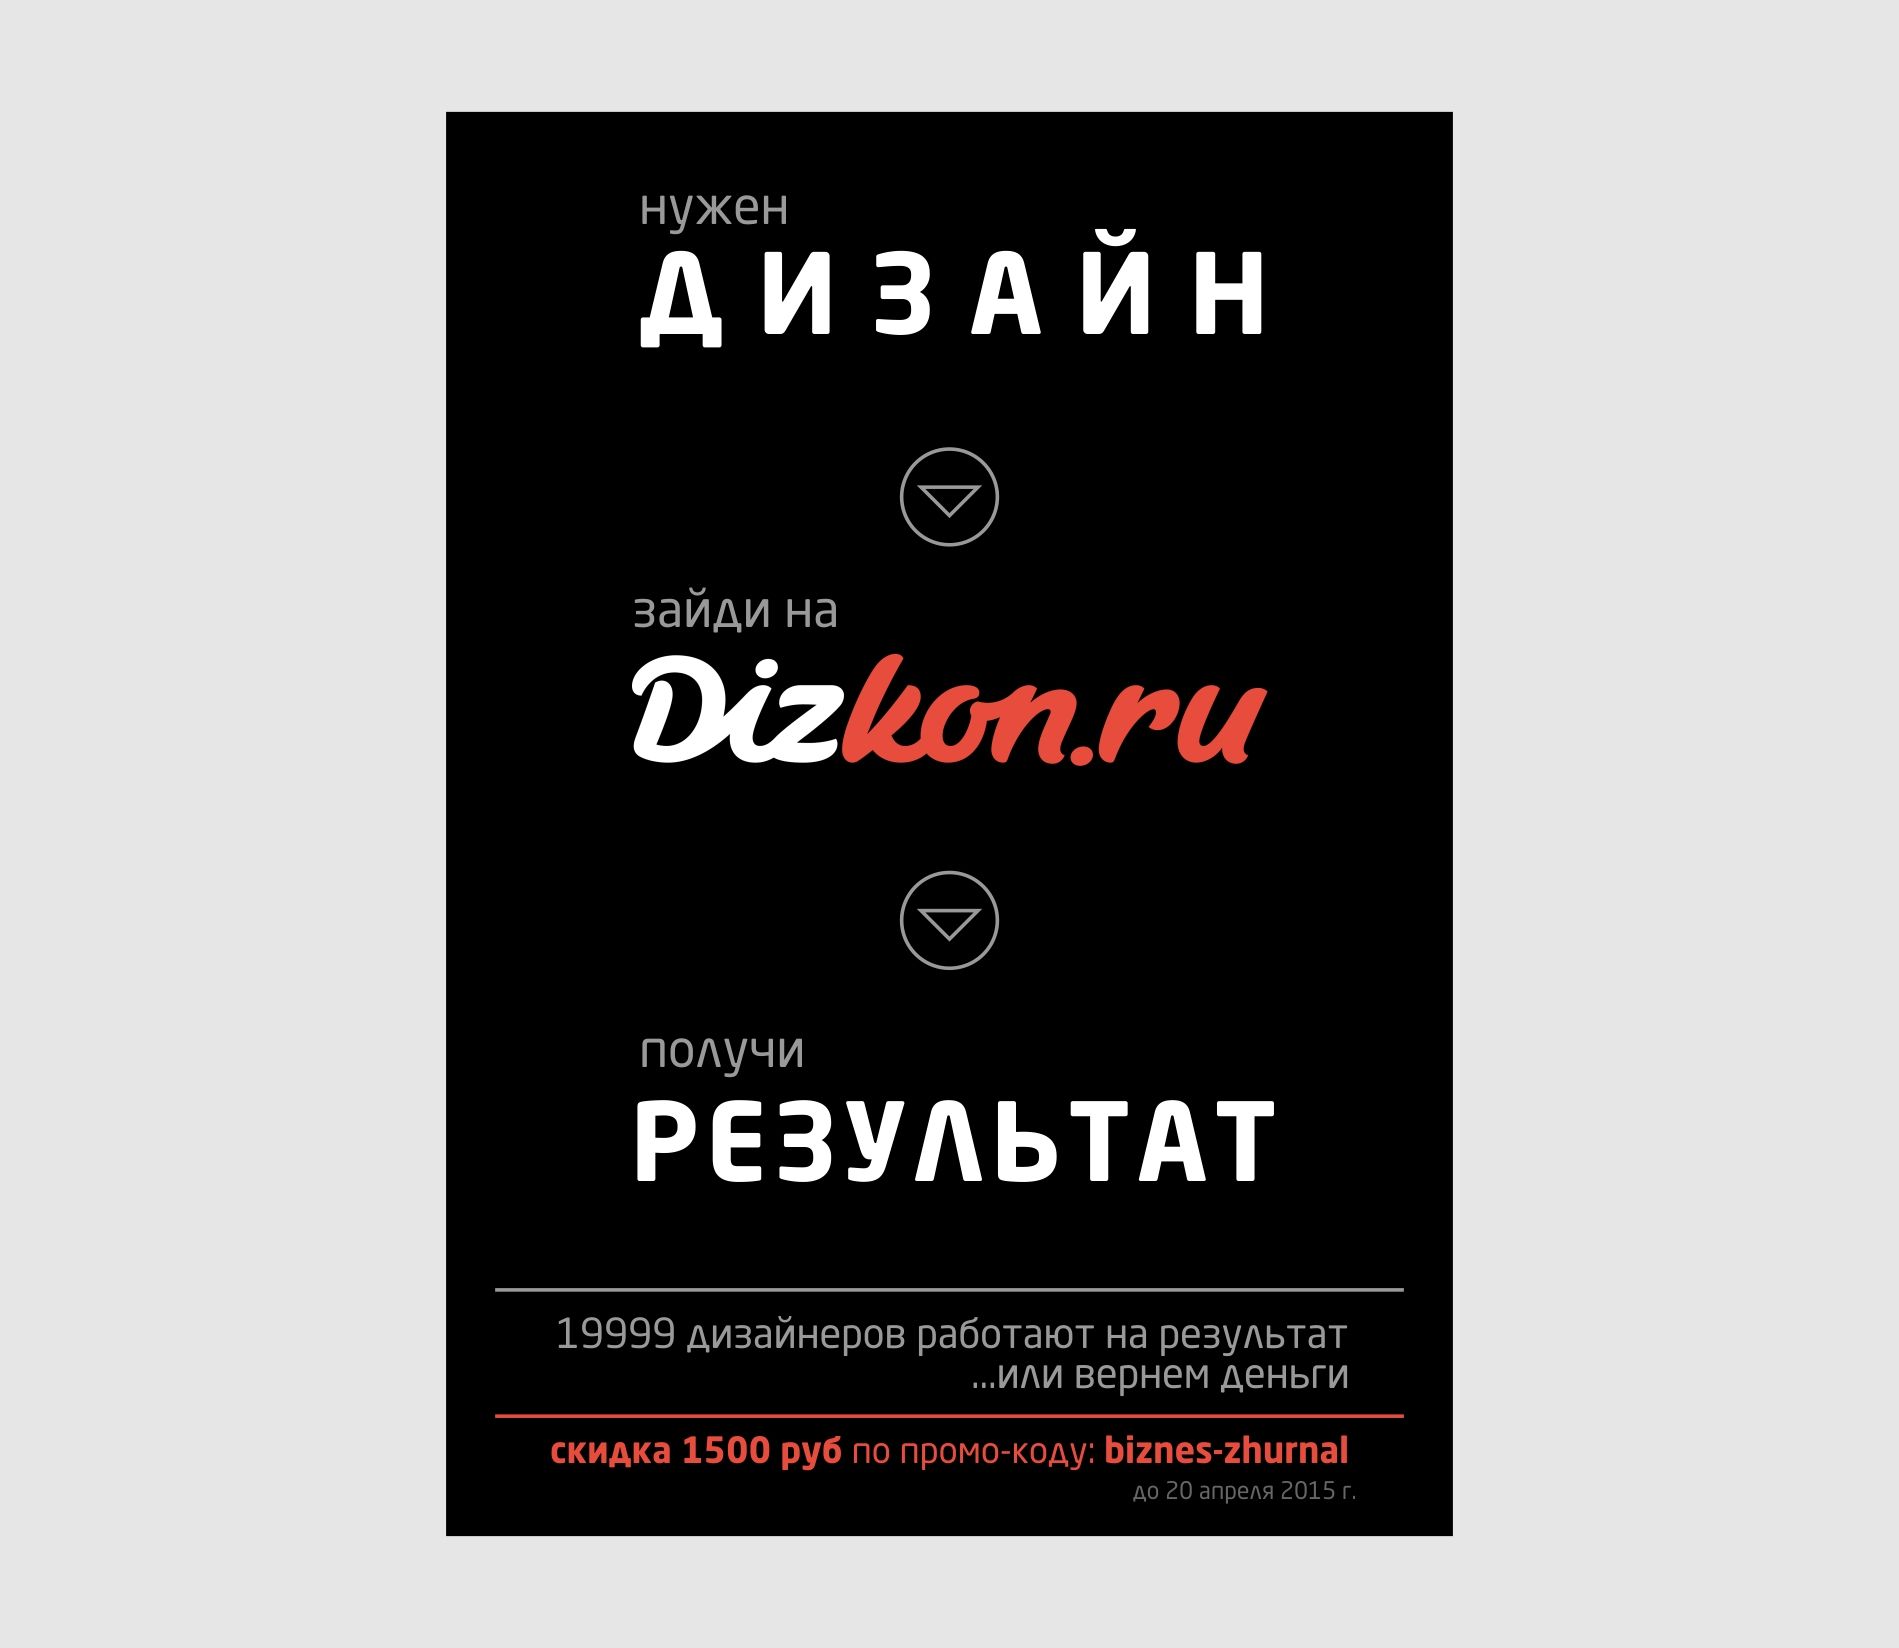 Рекламная полоса Dizkon для Бизнес-журнала - дизайнер kras-sky